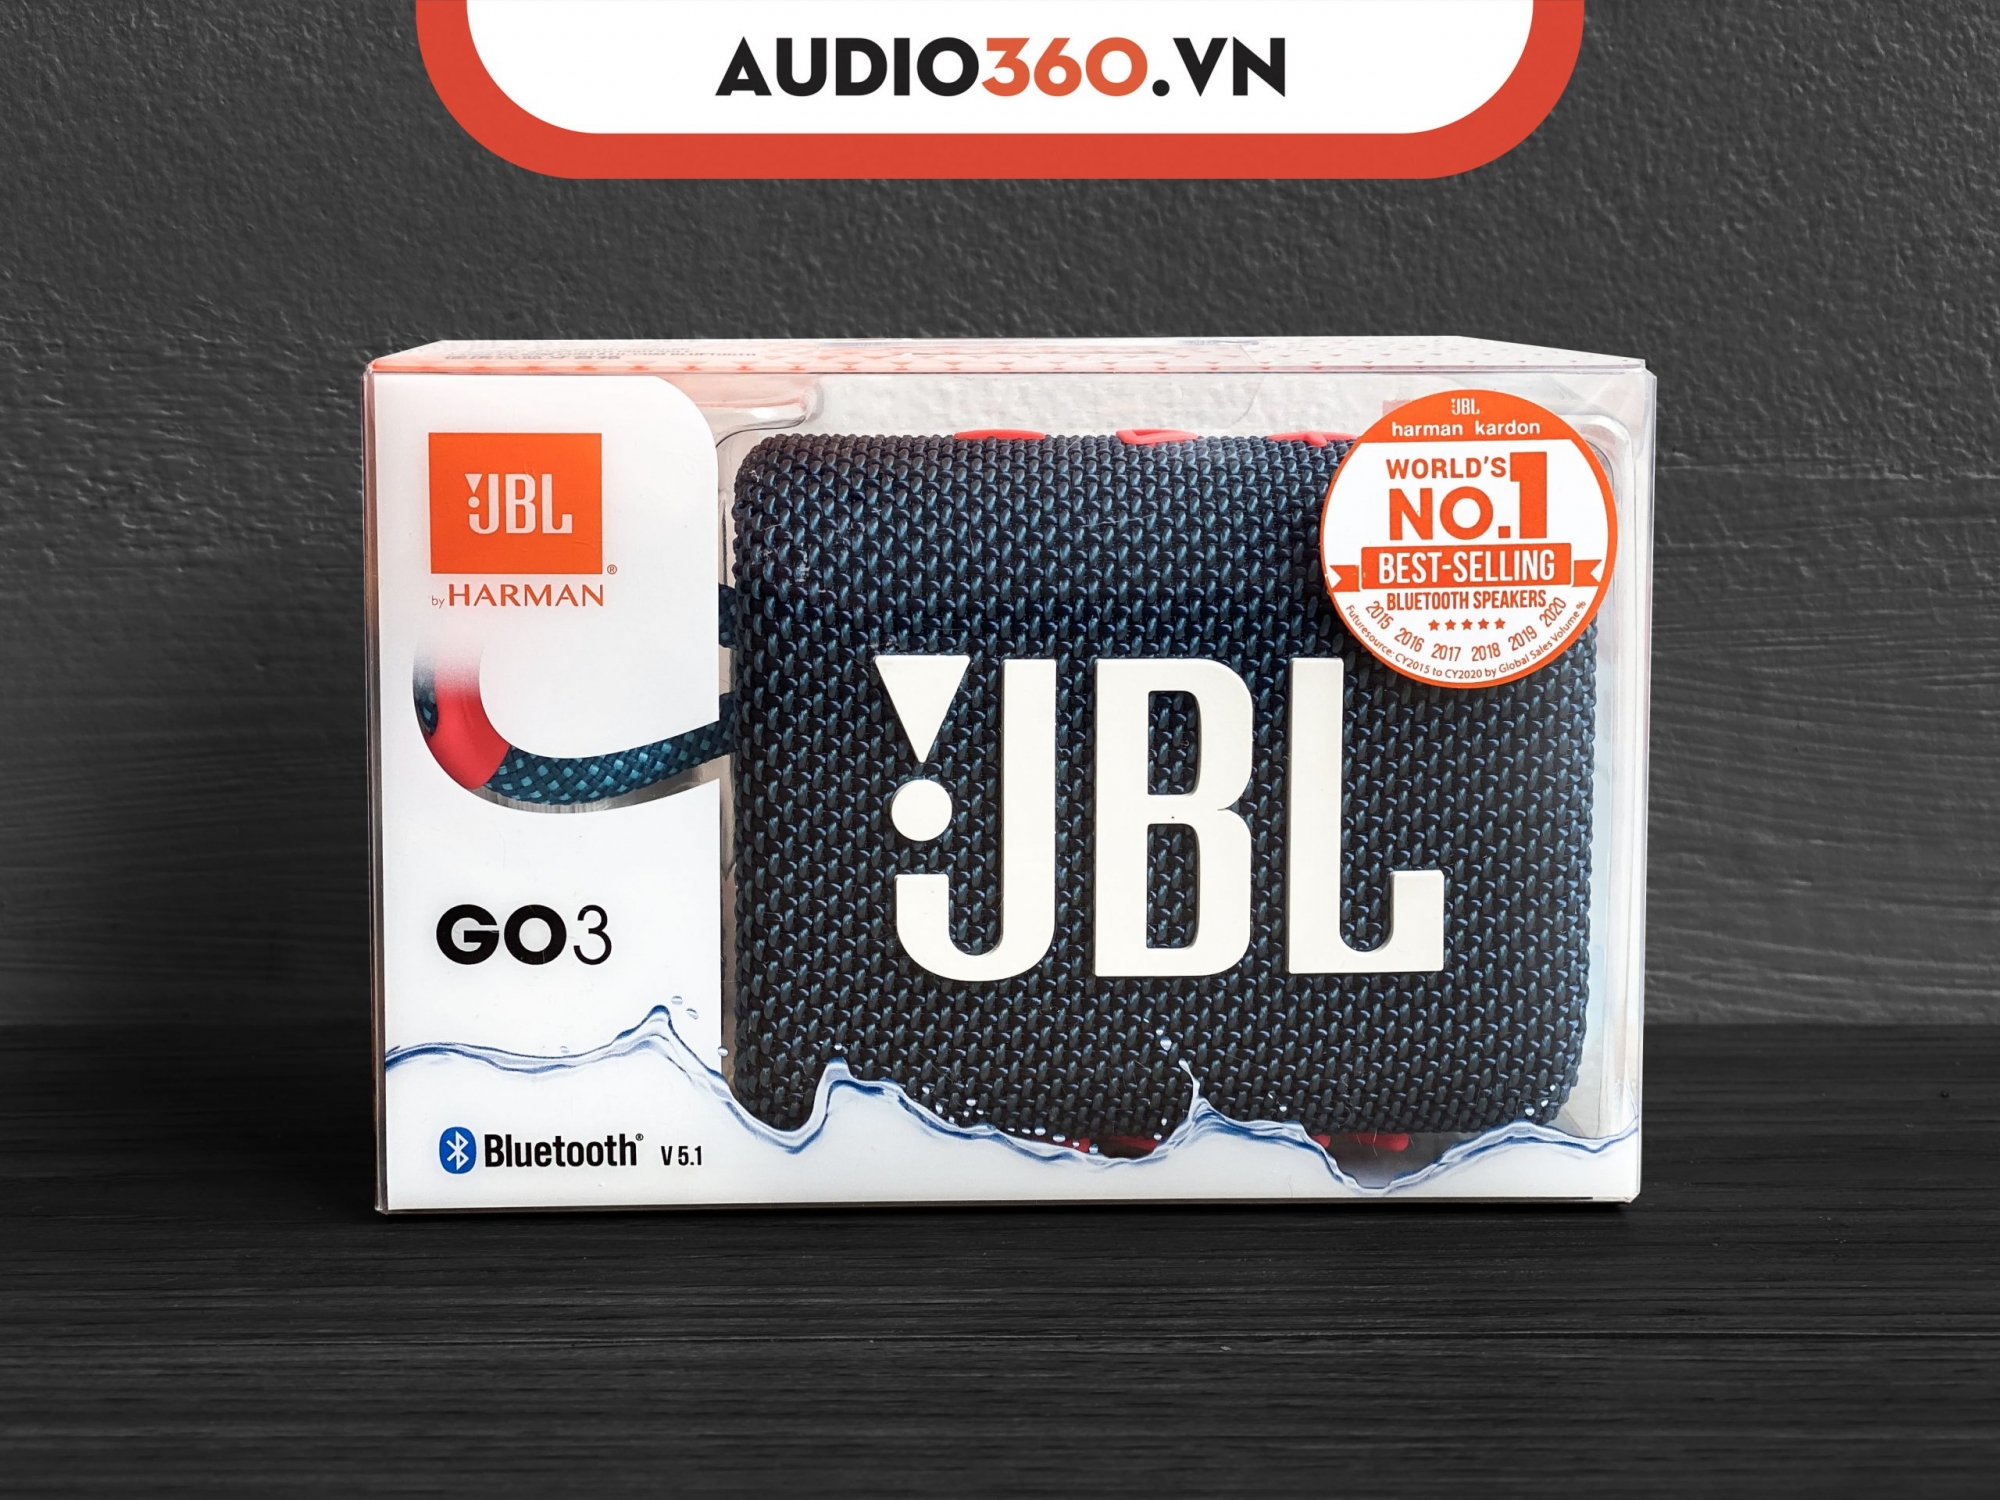 Loa Bluetooth JBL Go 3 mang thiết kế năng động, nhỏ gọn.